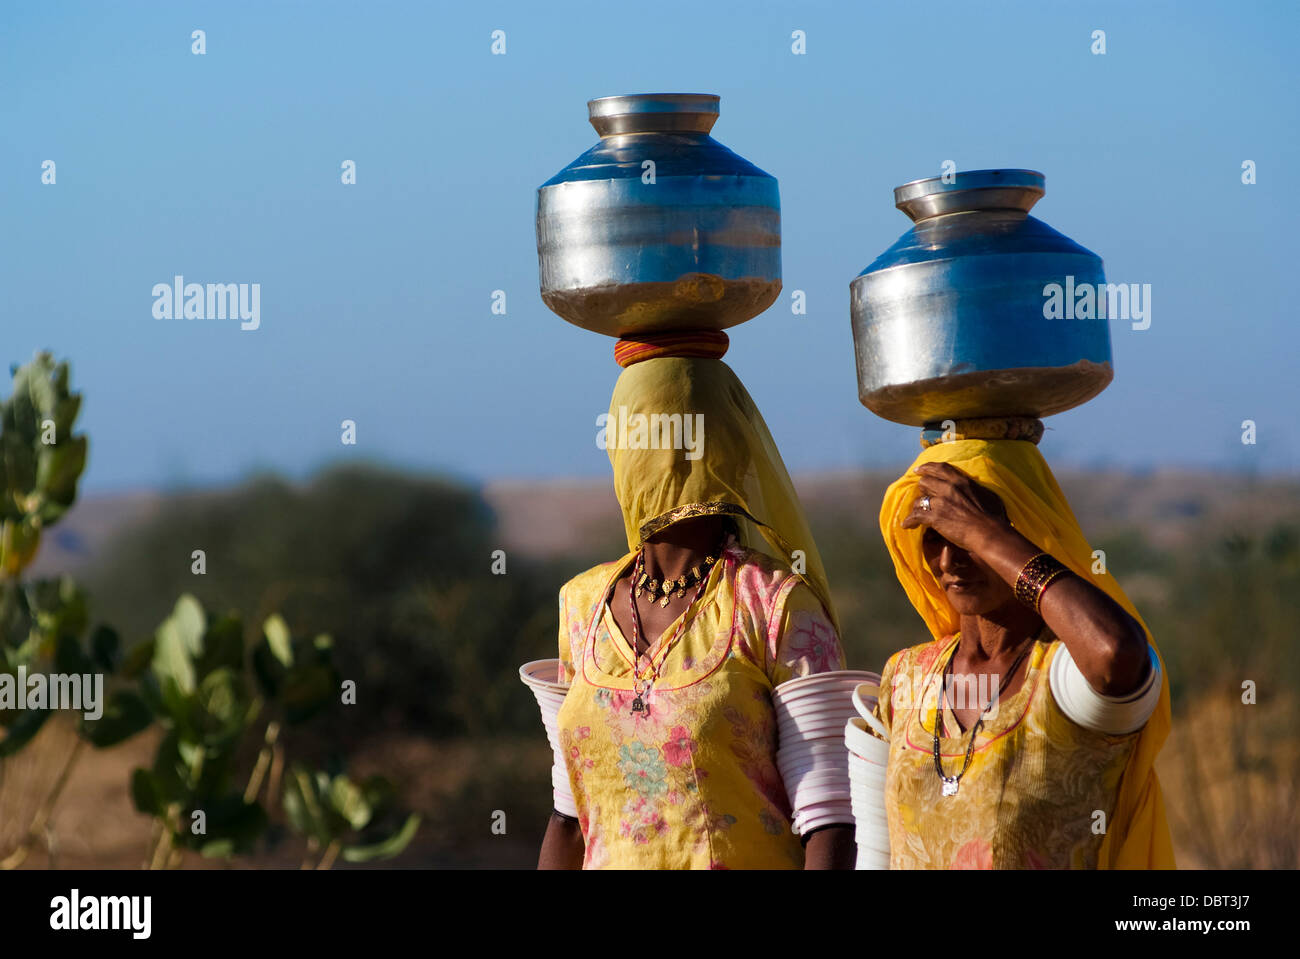 Frauen schleppen einen Wasserkrug auf dem Kopf am 27. Februar 2013 in Rajasthan, Indien, aufgrund des Fehlens von Leitungswasser in der Gegend. Stockfoto